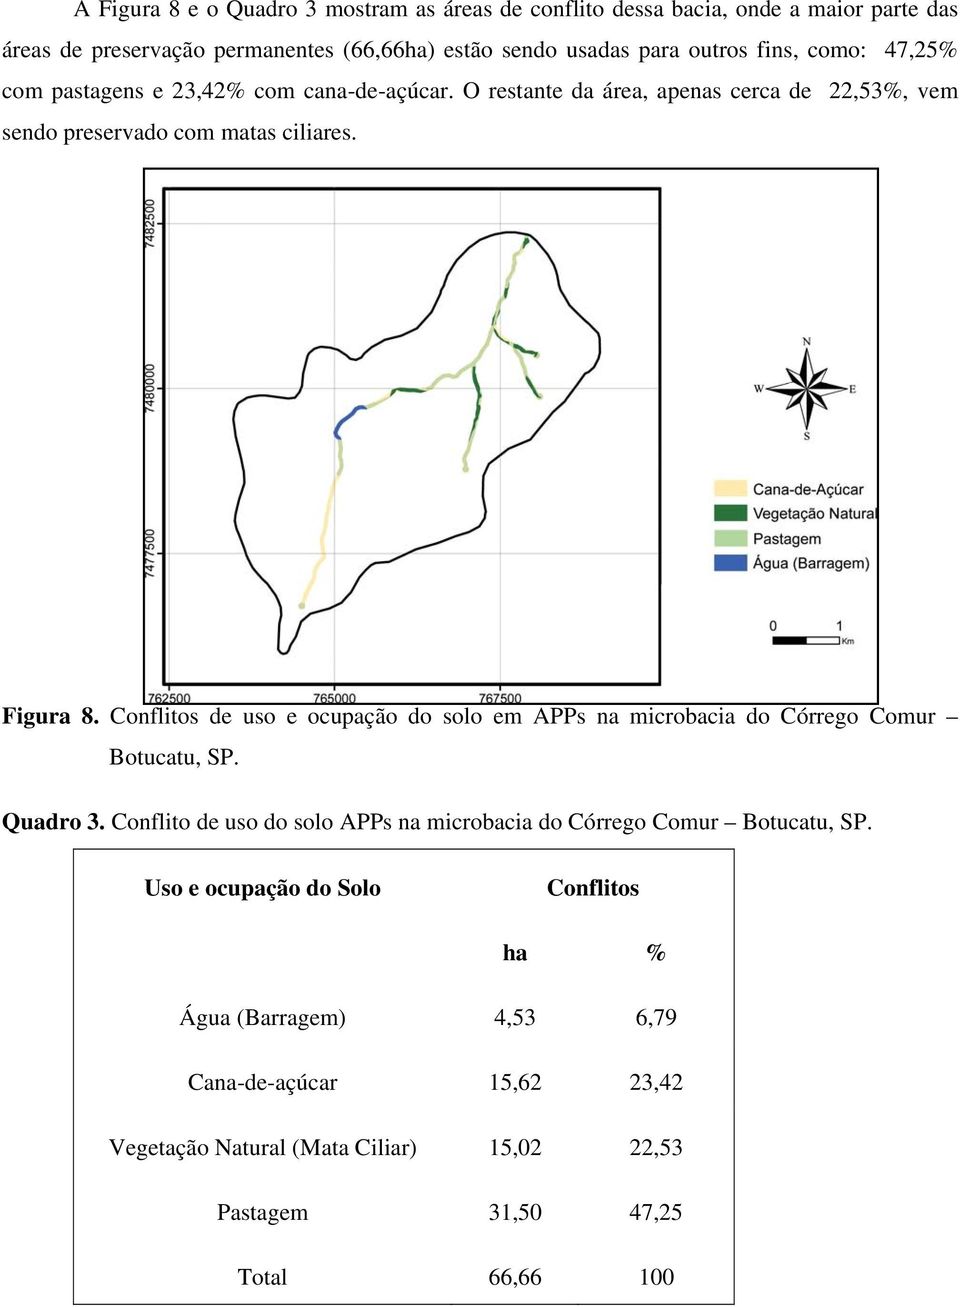 Conflitos de uso e ocupação do solo em APPs na microbacia do Córrego Comur Botucatu, SP. Quadro 3.